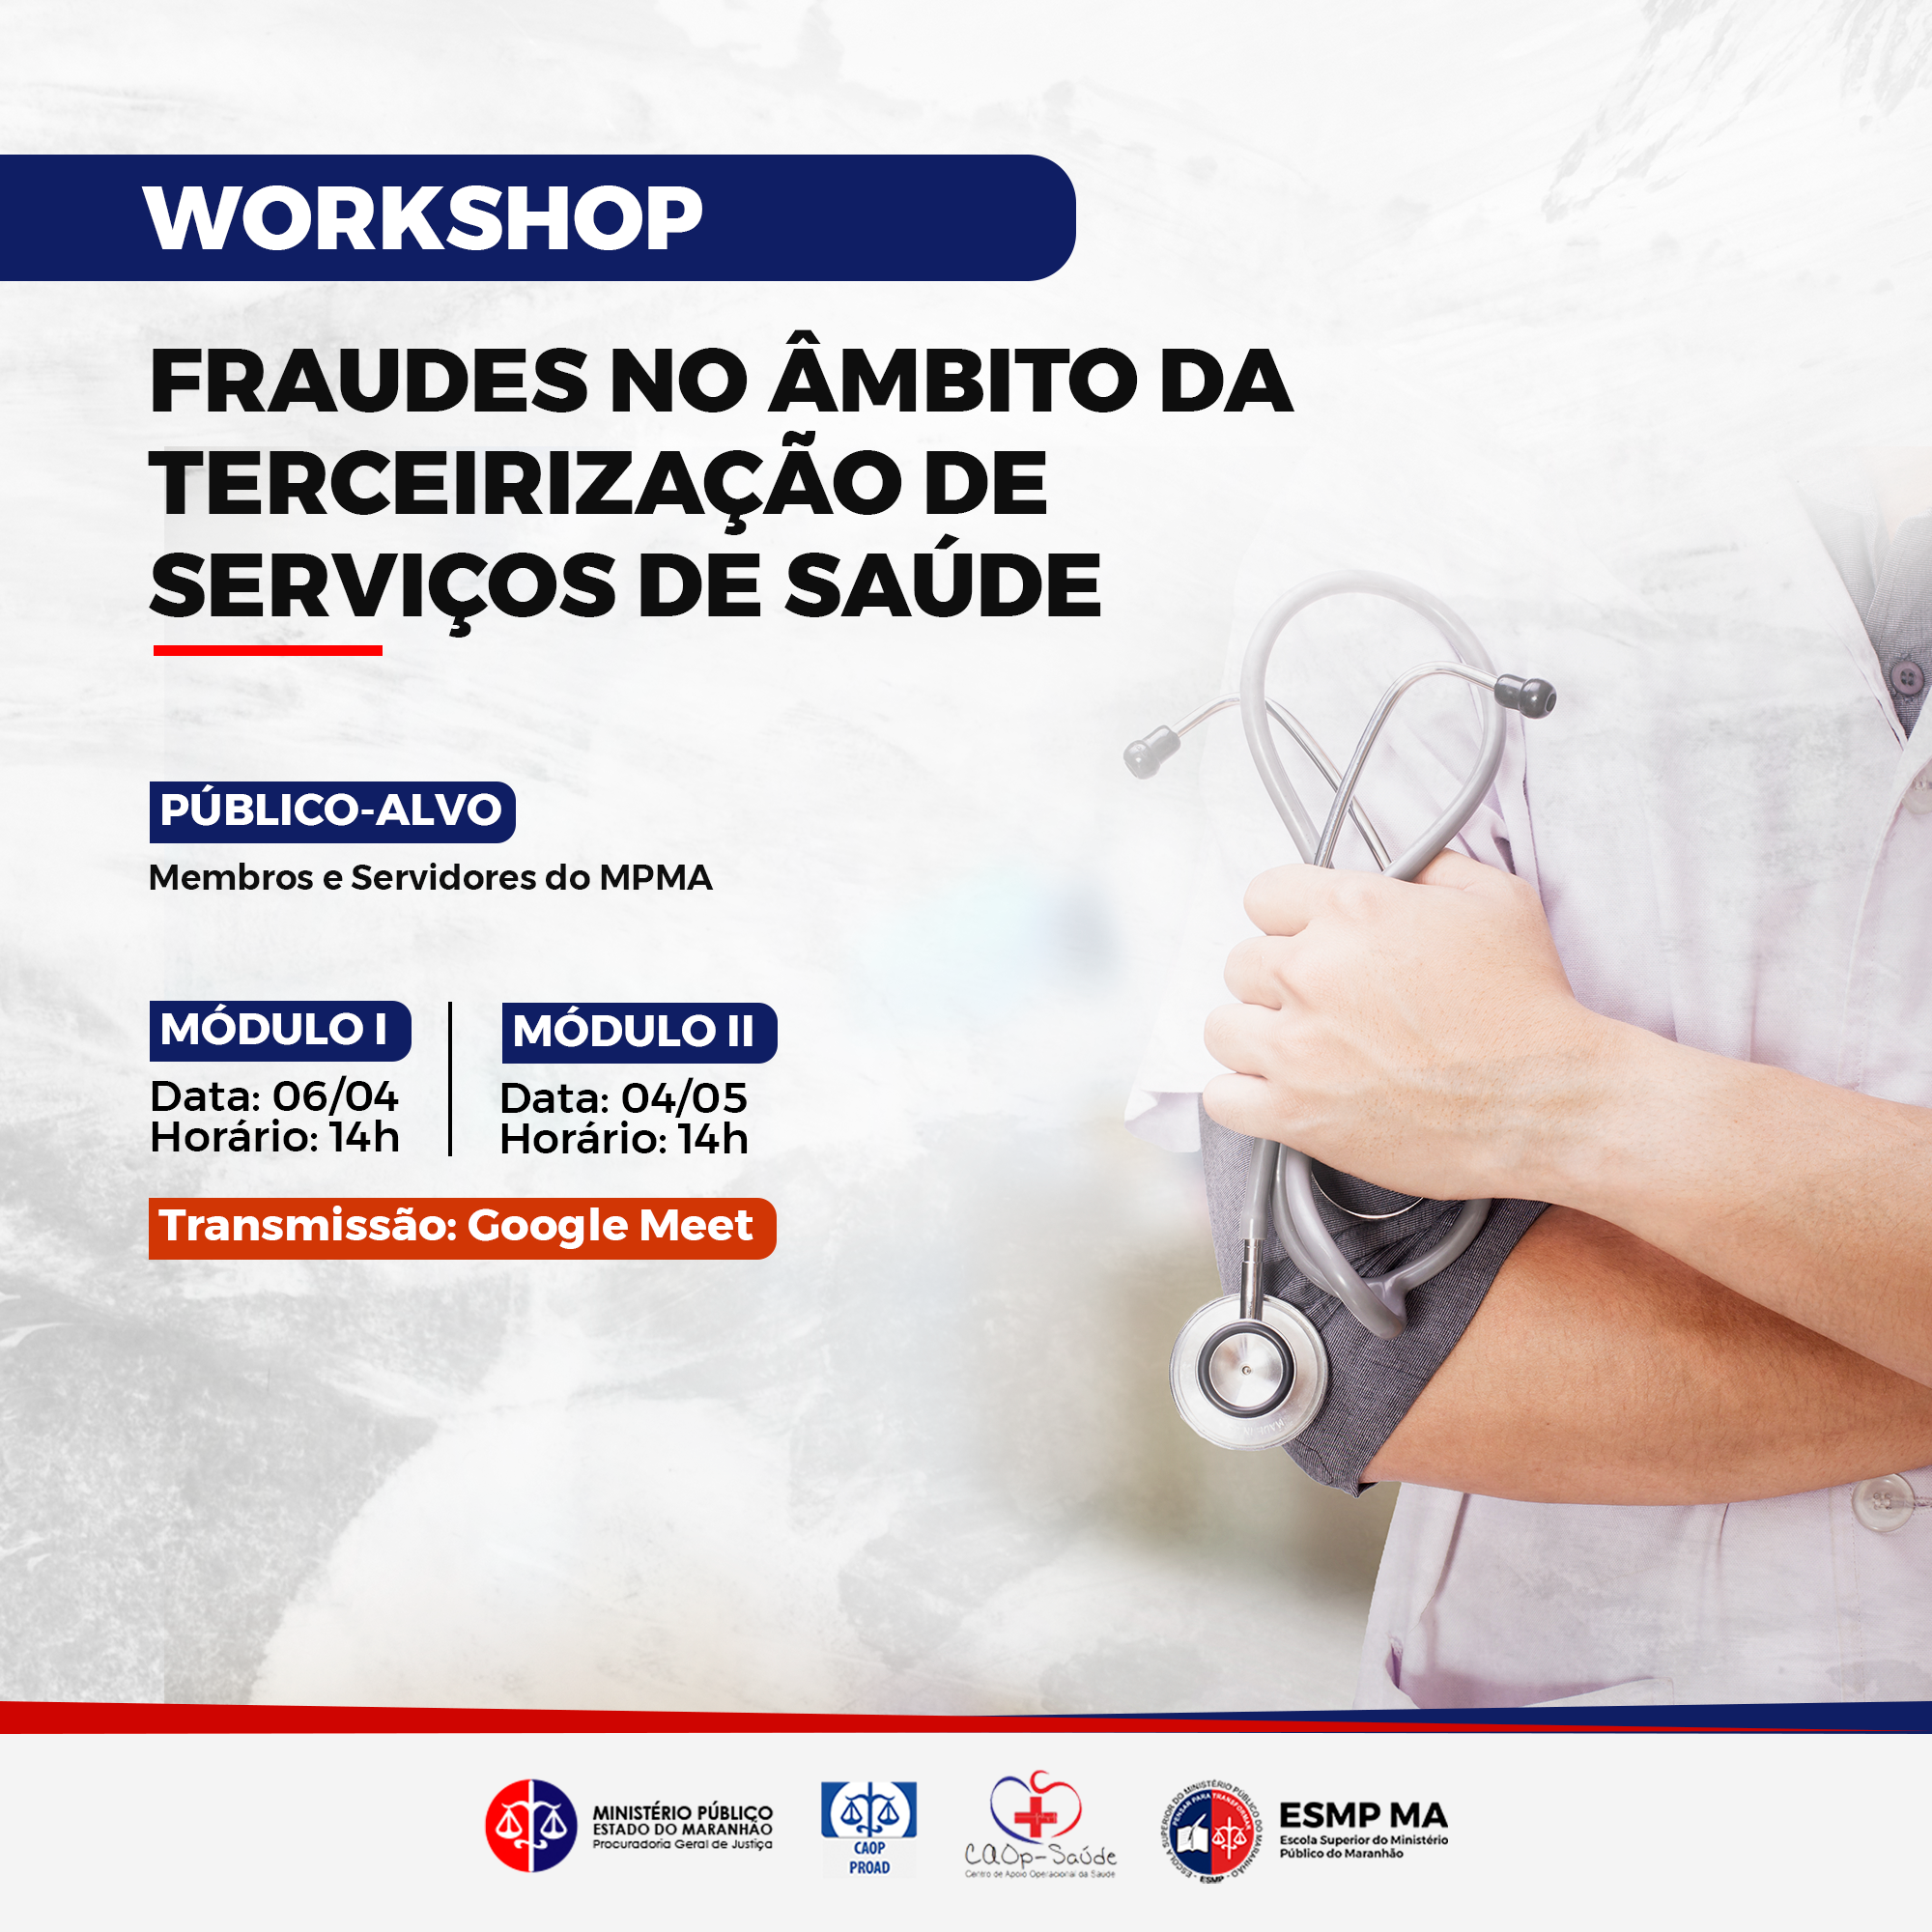 Workshop "Fraudes no âmbito da terceirização de serviços de saúde"